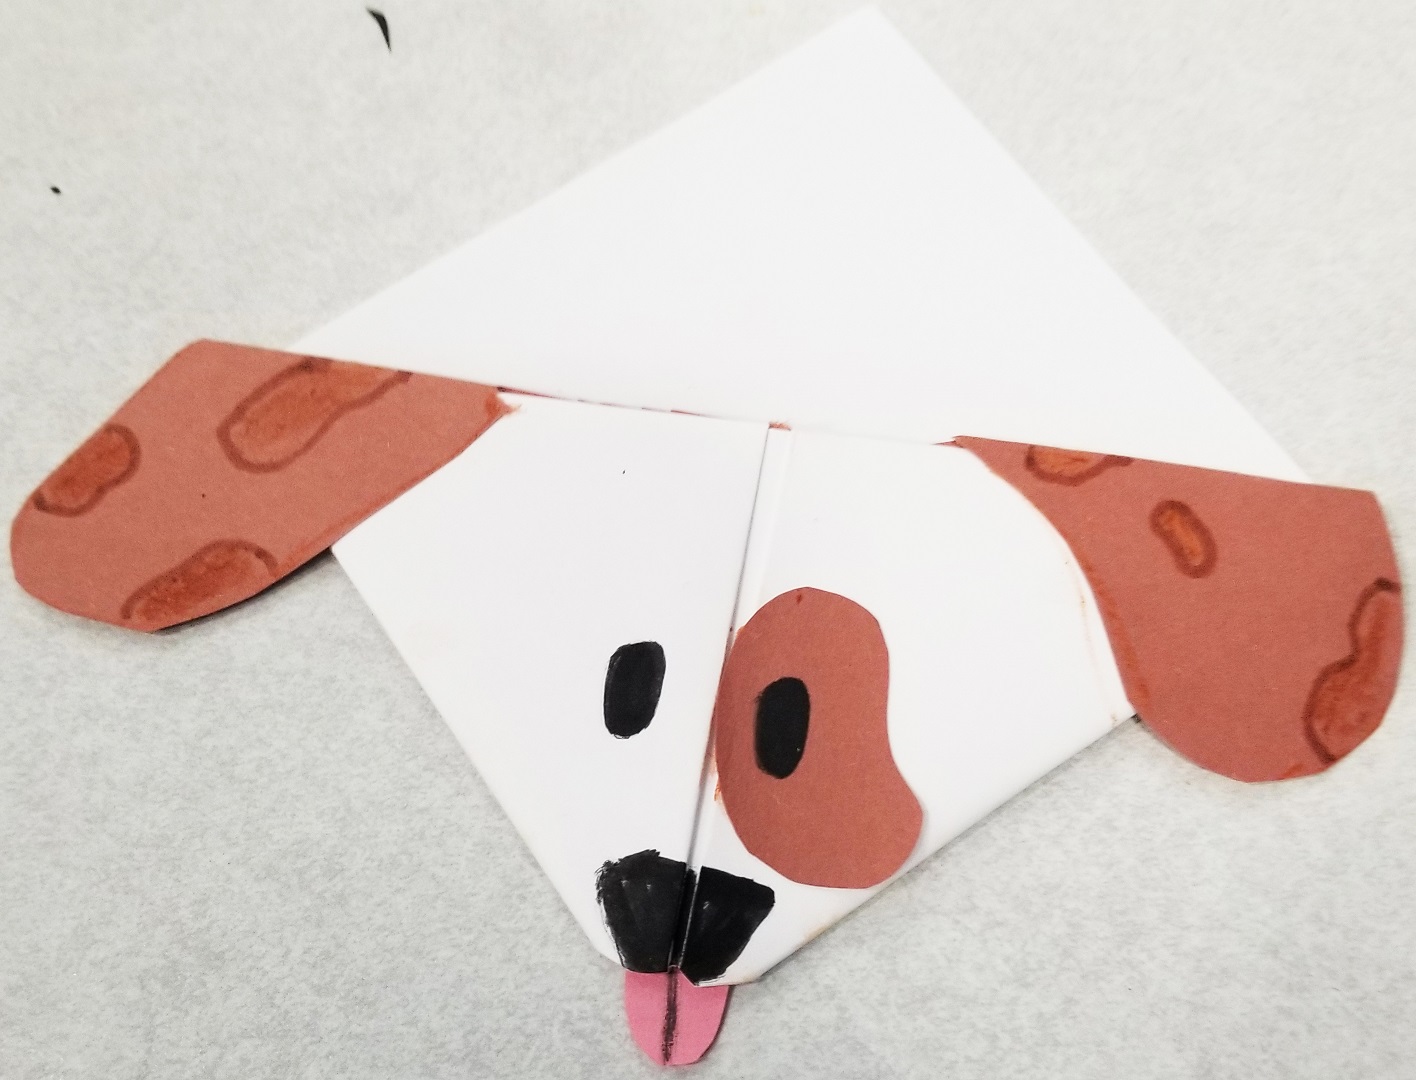 A 5th graders's dog craft at Politi Elementary